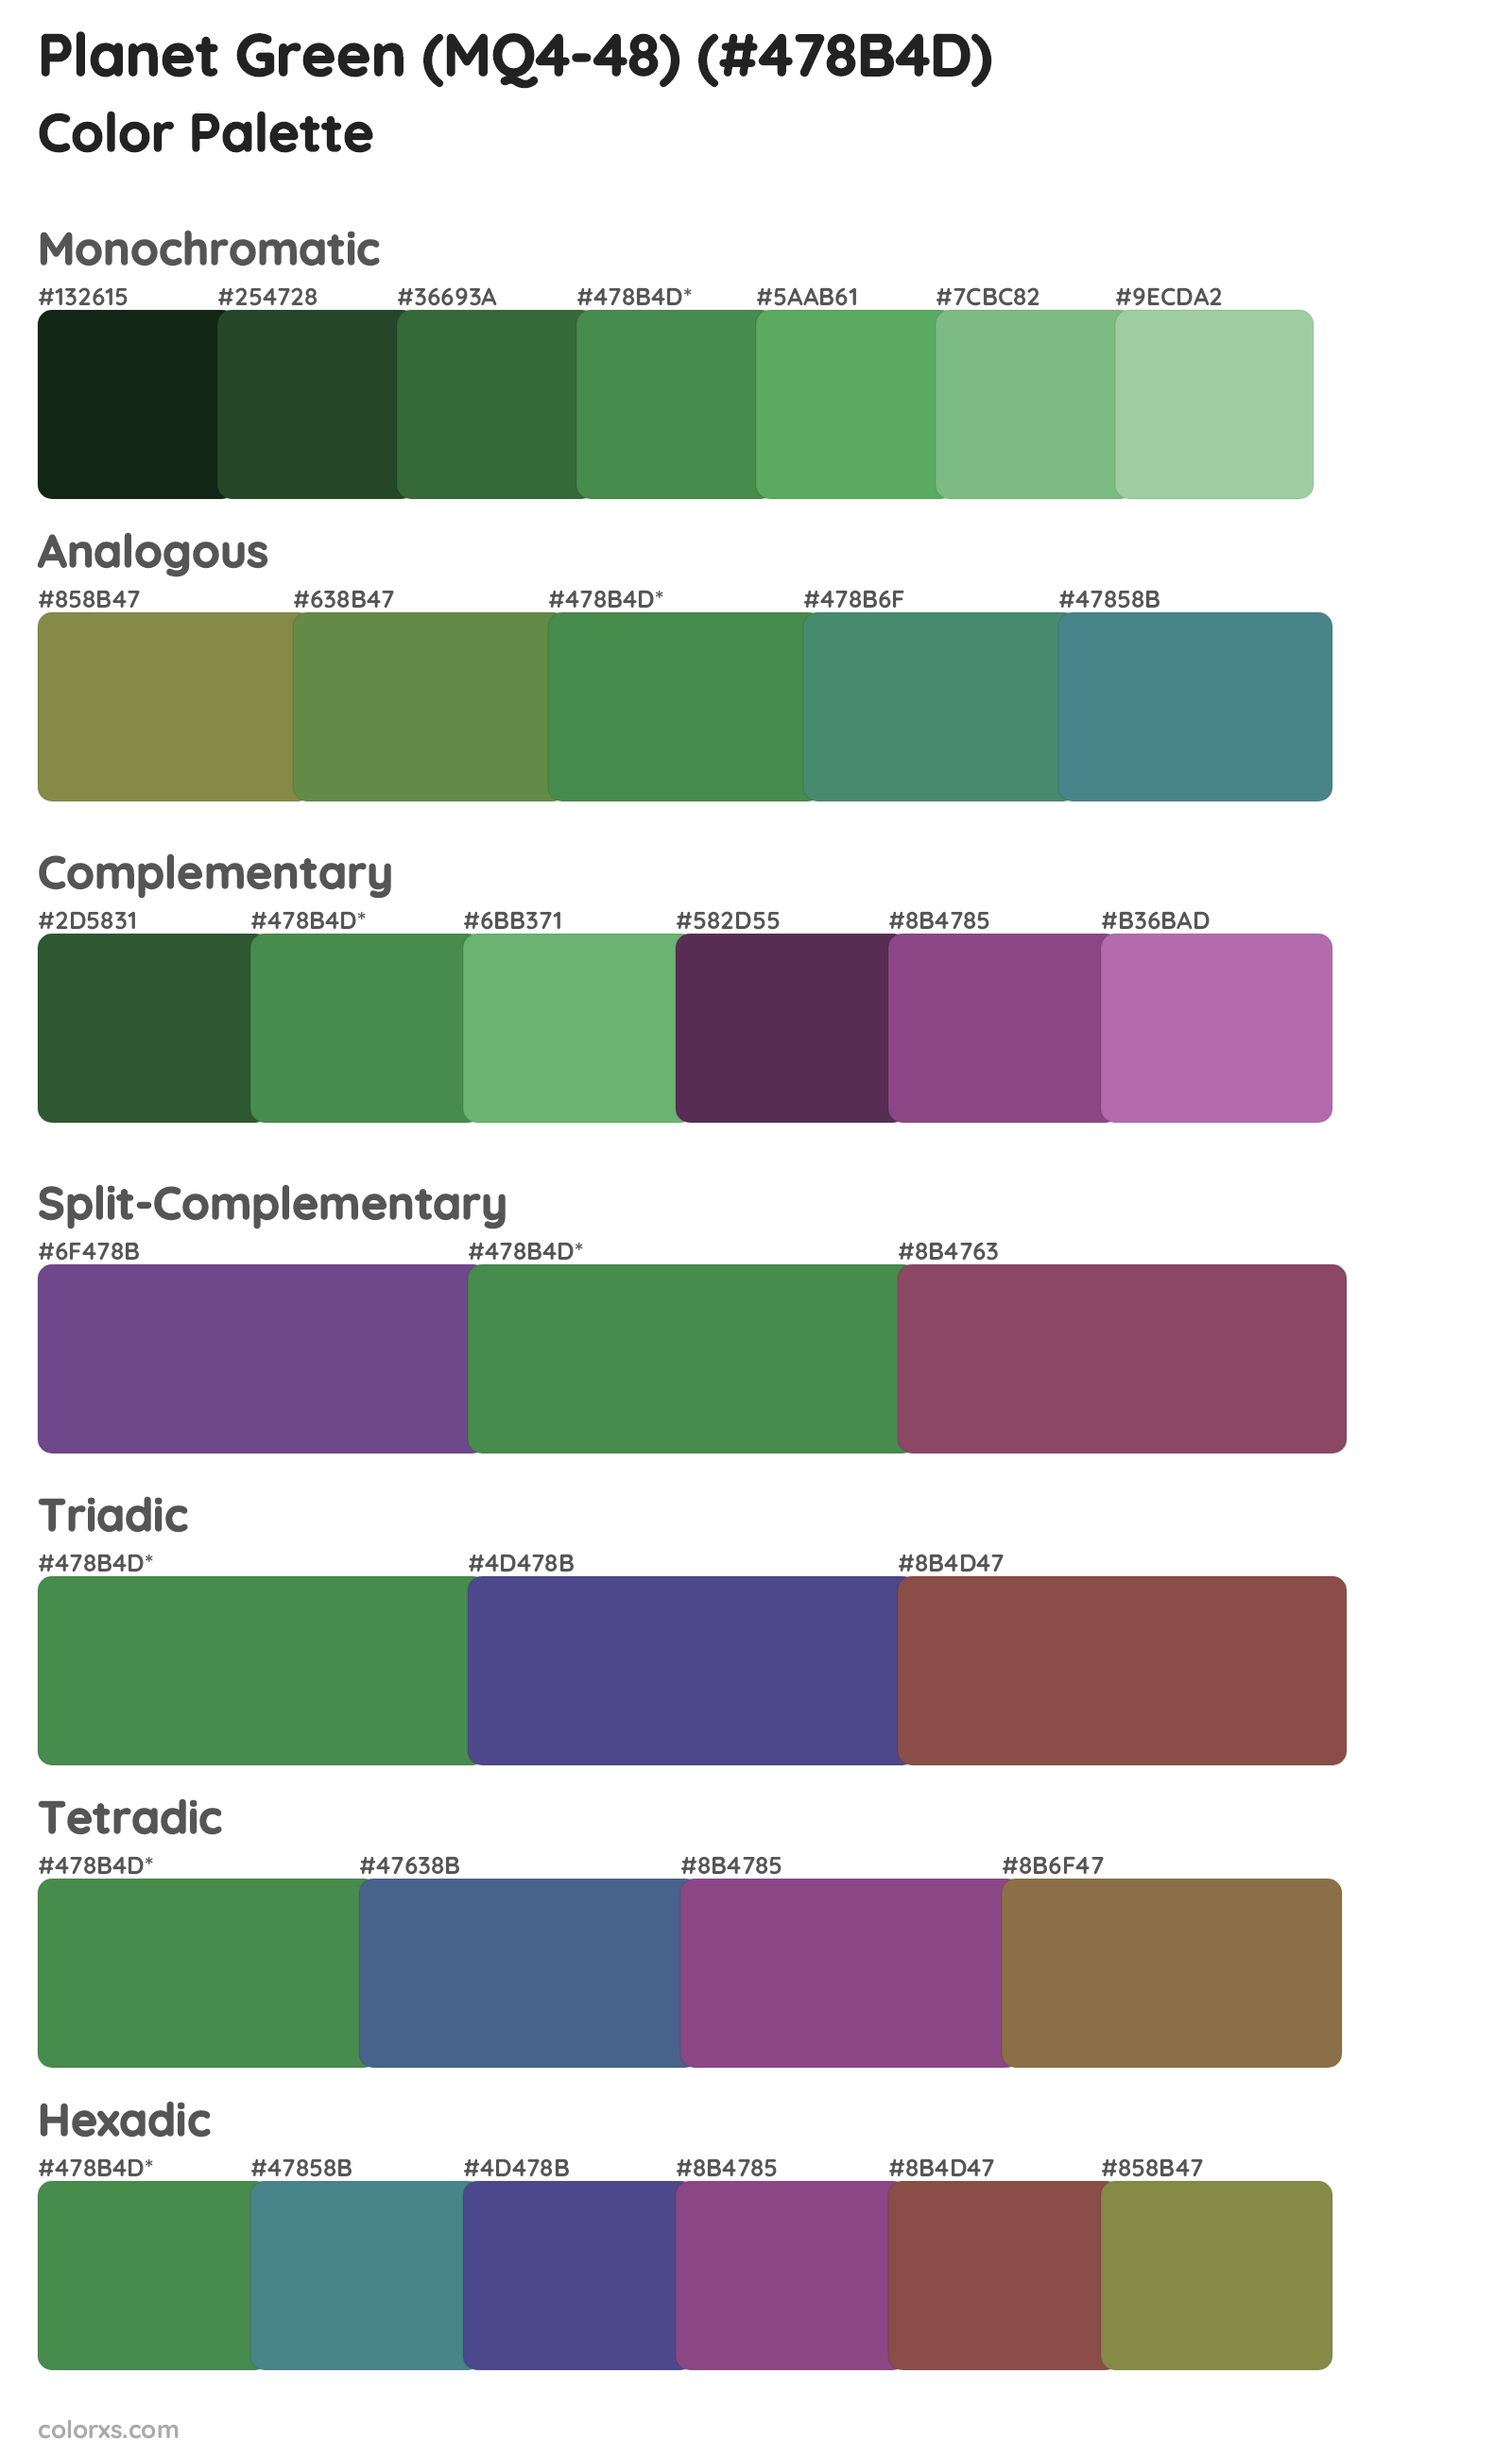 Planet Green (MQ4-48) Color Scheme Palettes